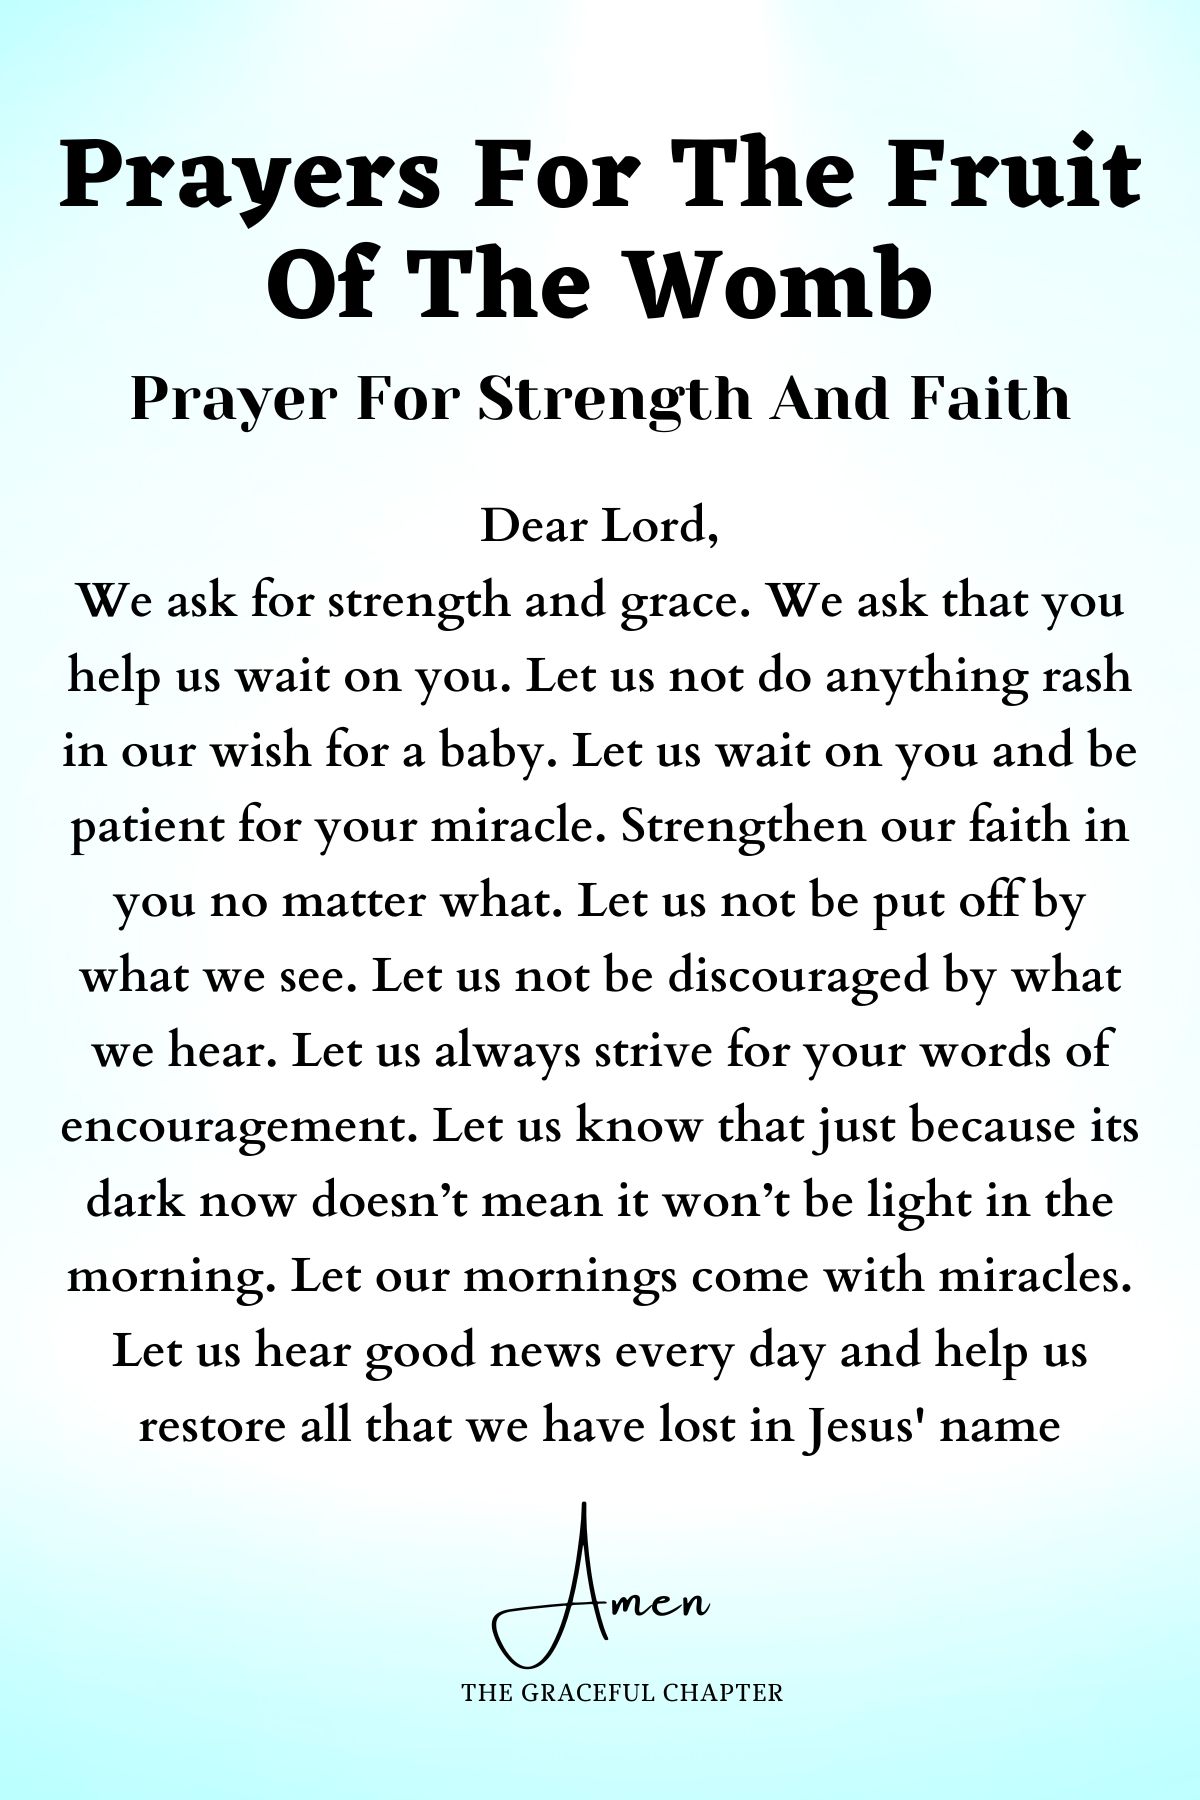 Prayer for strength and faith